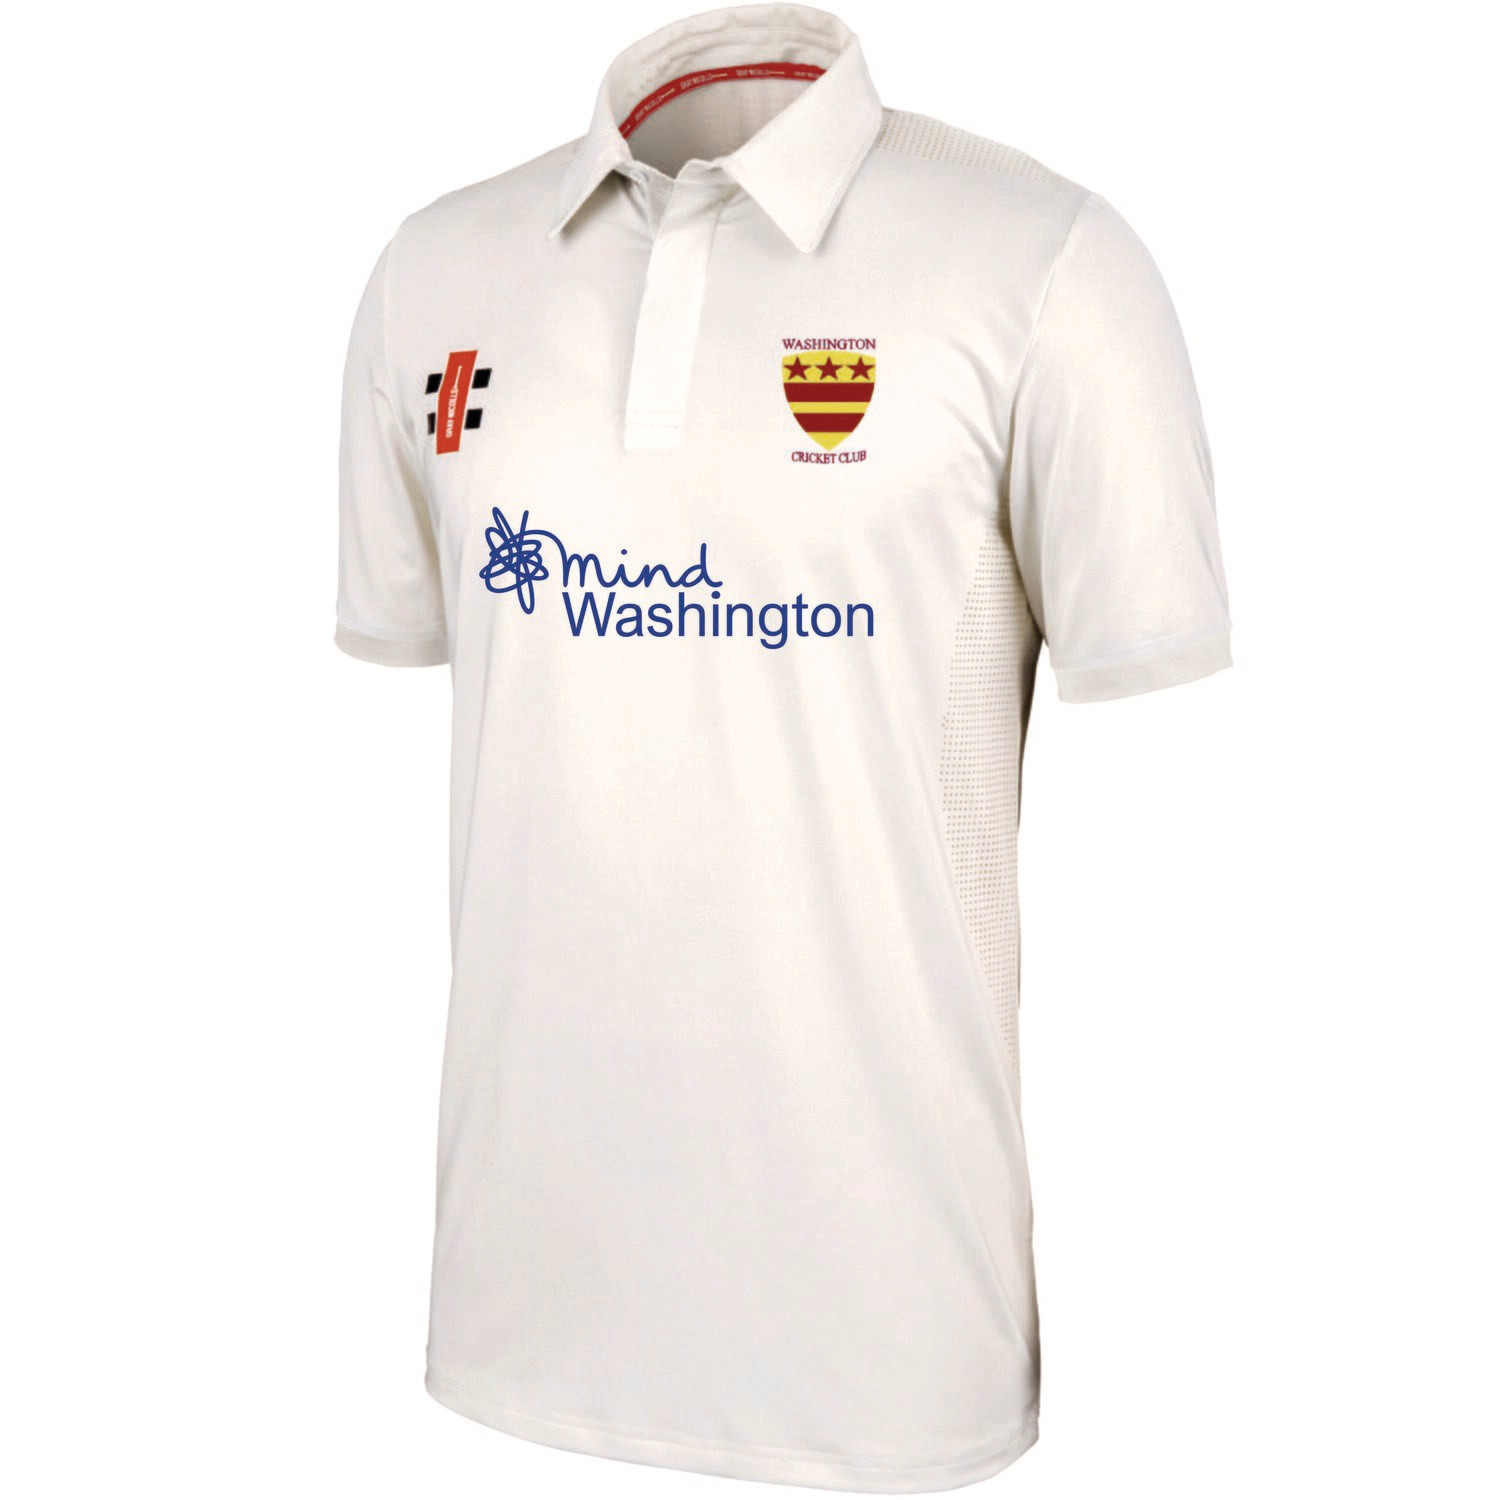 Washington Pro Performance Short Sleeve Cricket Shirt